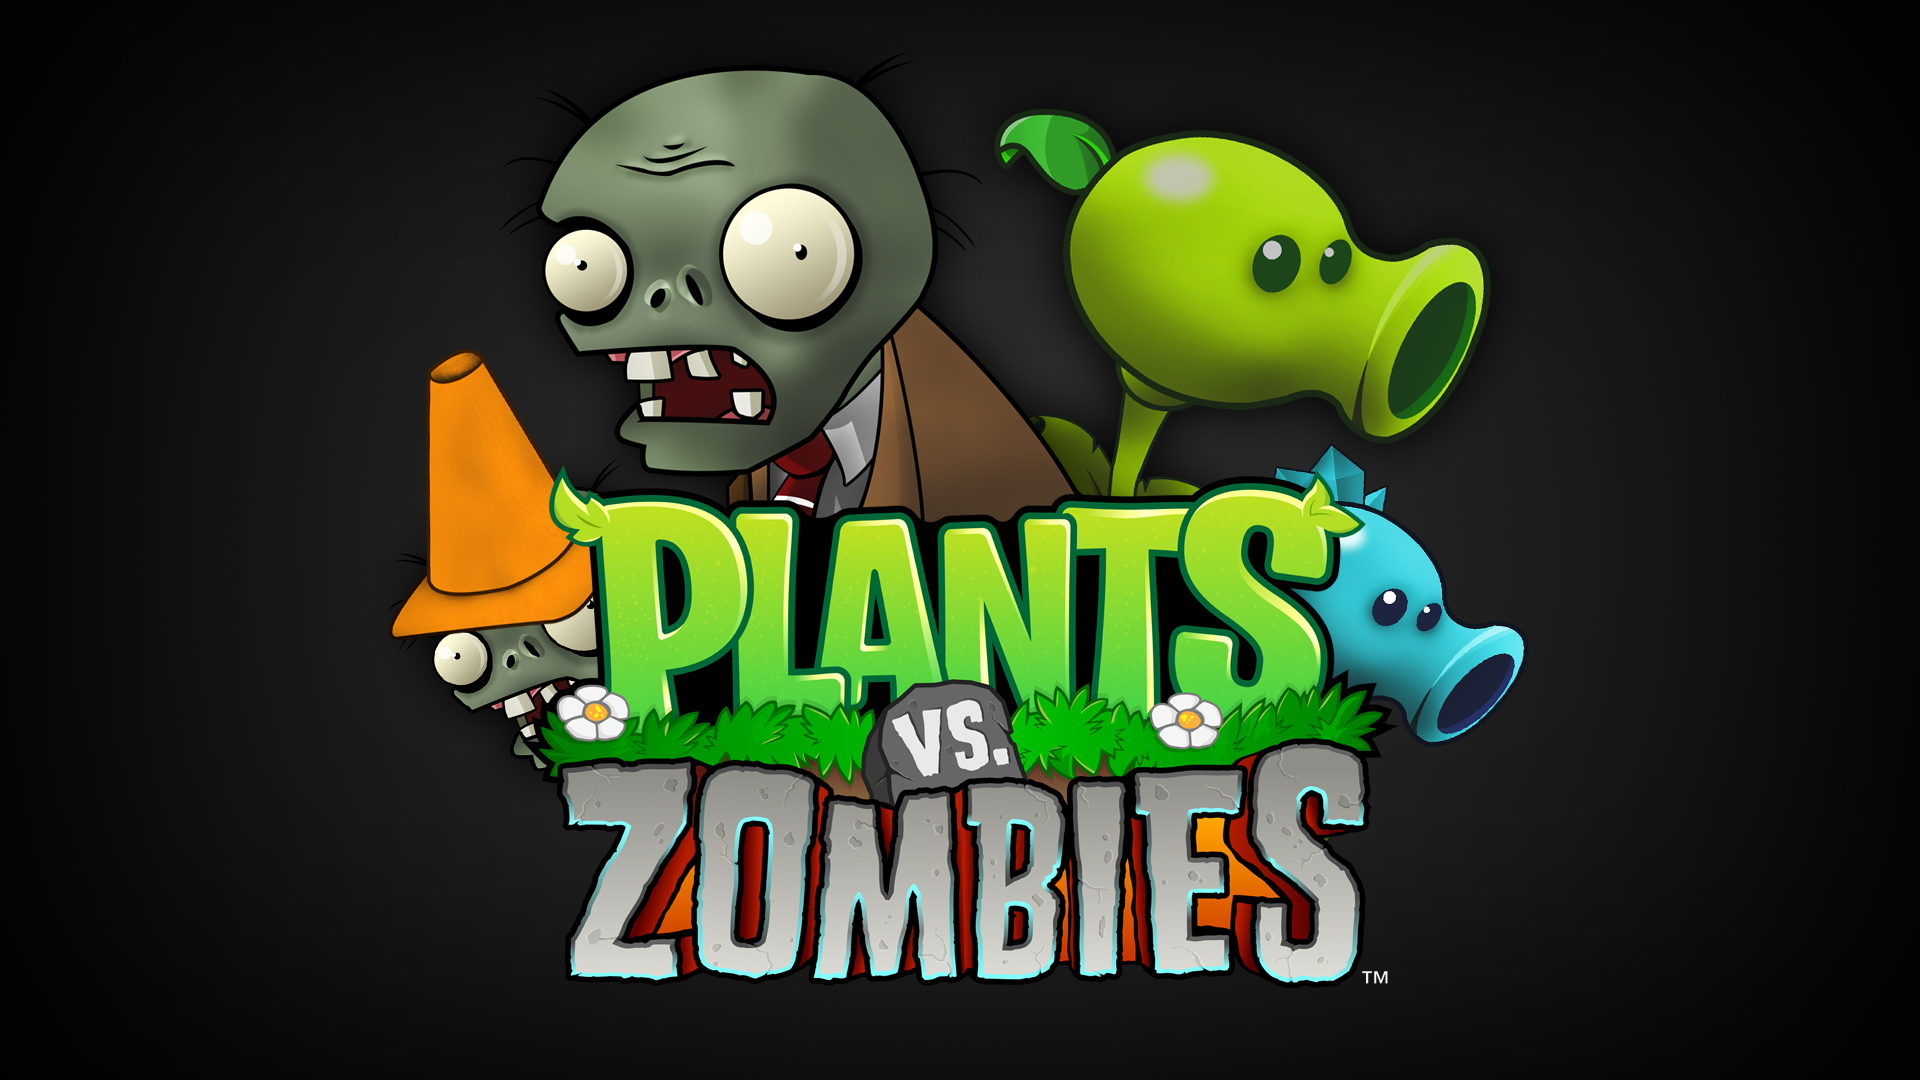 Wallpapers de Plantas vs Zombie